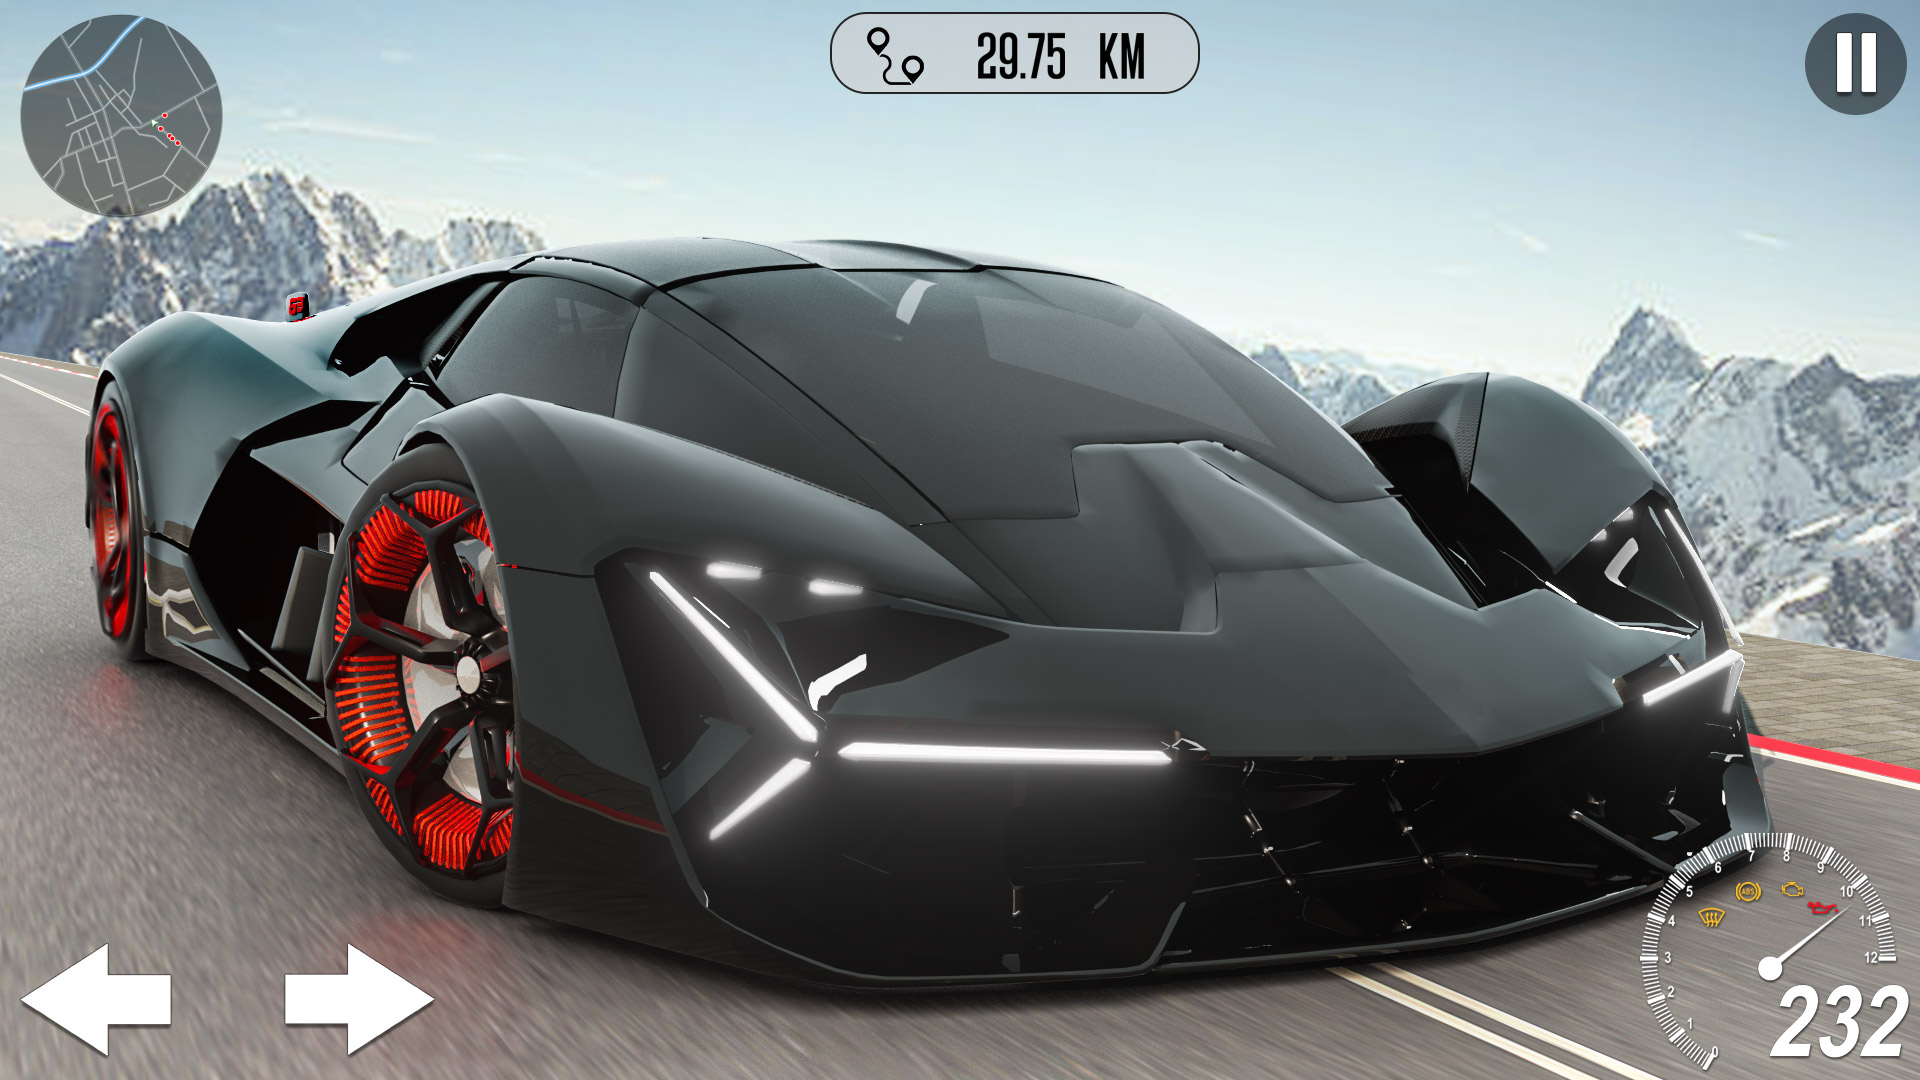  Lamborghini Terzo Millennio in Asphalt 8: Airborne